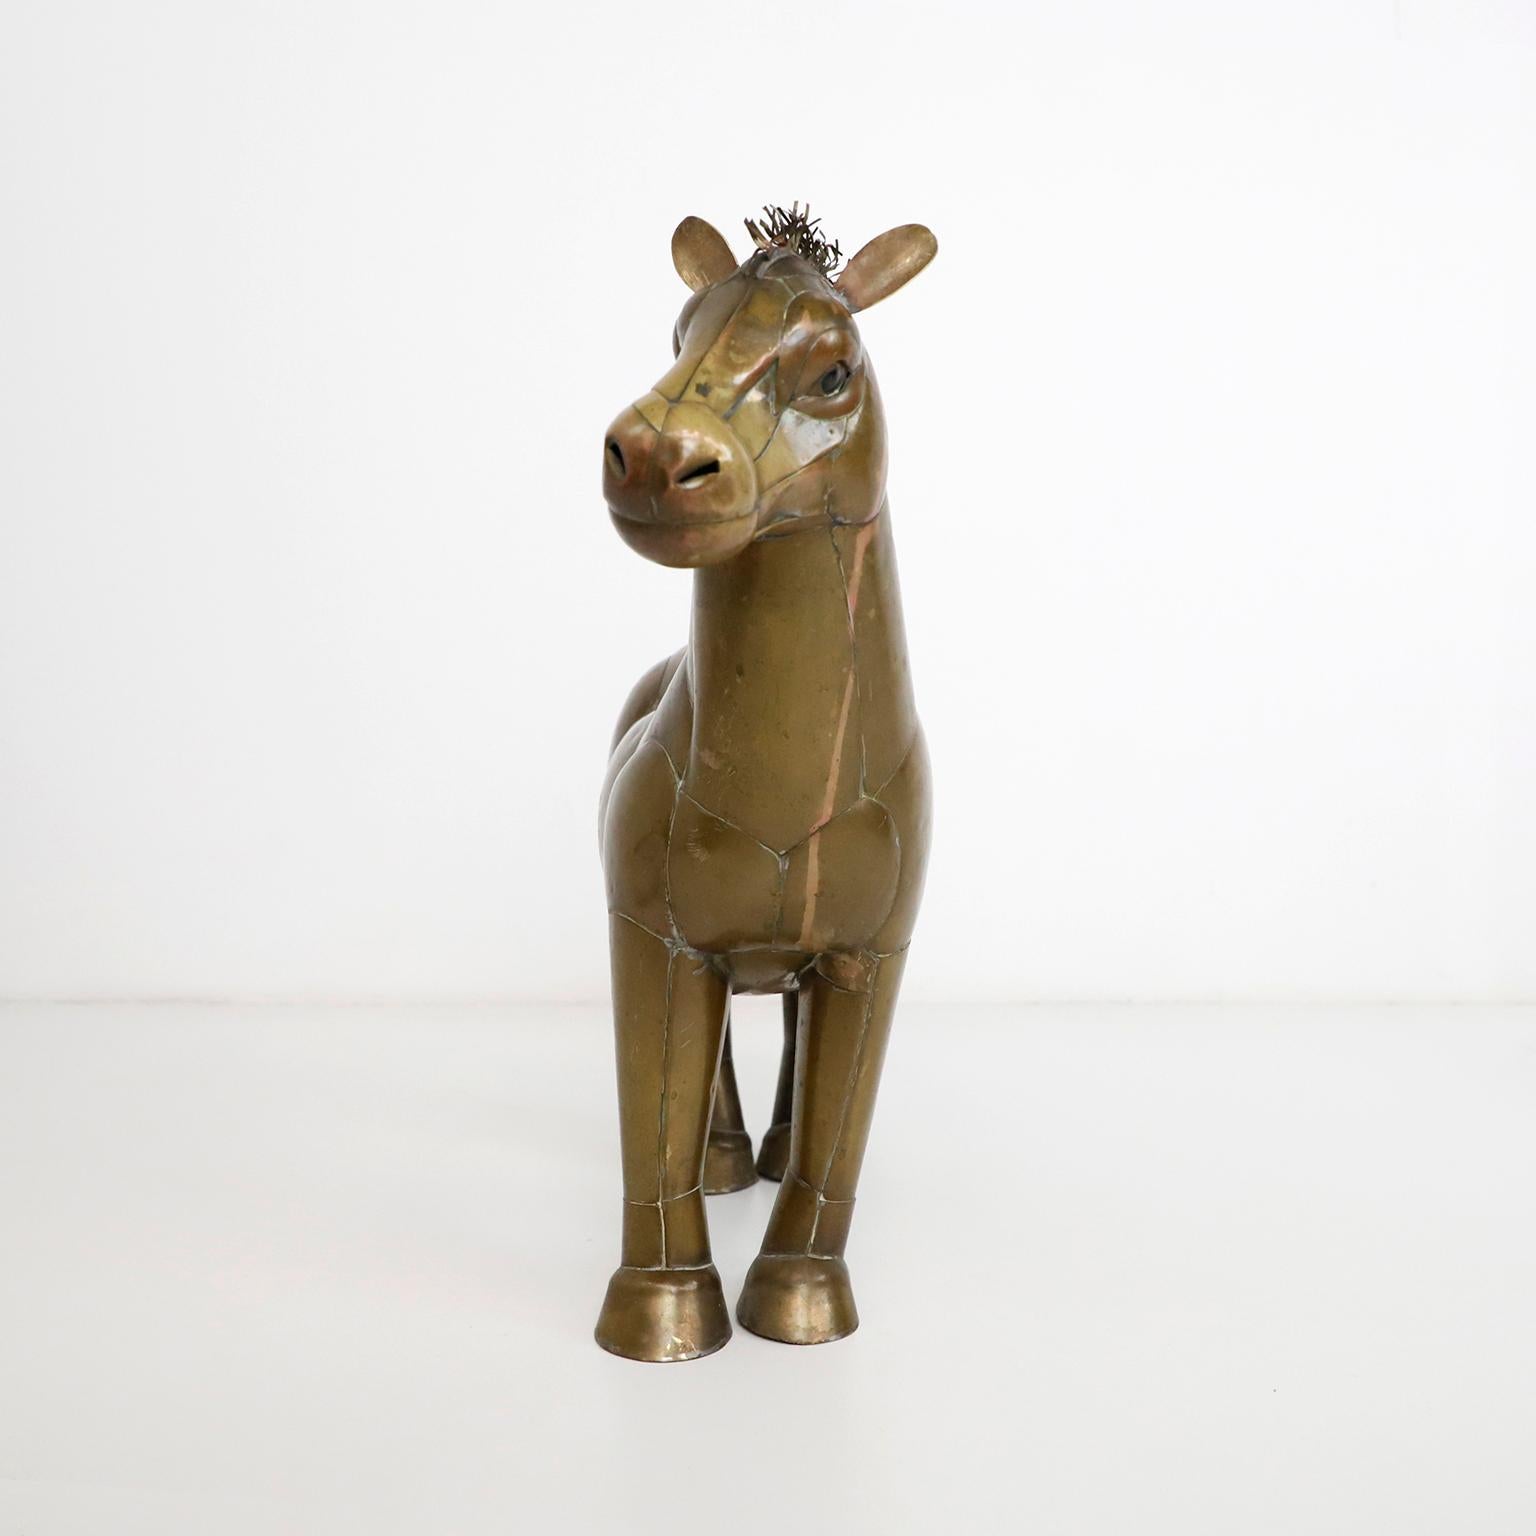 Circa 1960. Nous proposons cette figure de cheval en cuivre et laiton attribuée à Sergio Bustamante.